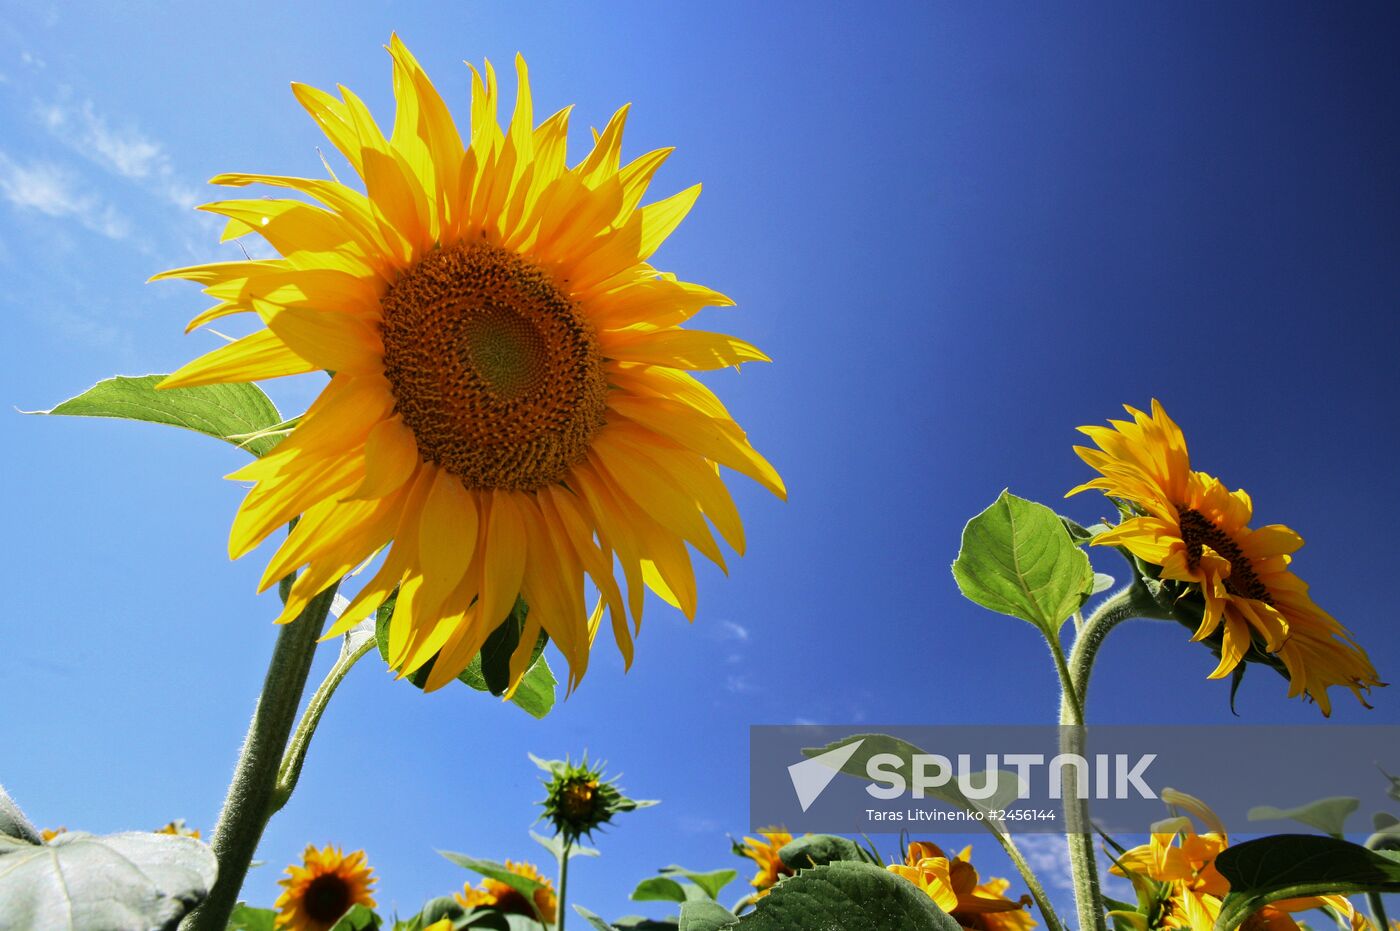 Sunflower fields in Crimea